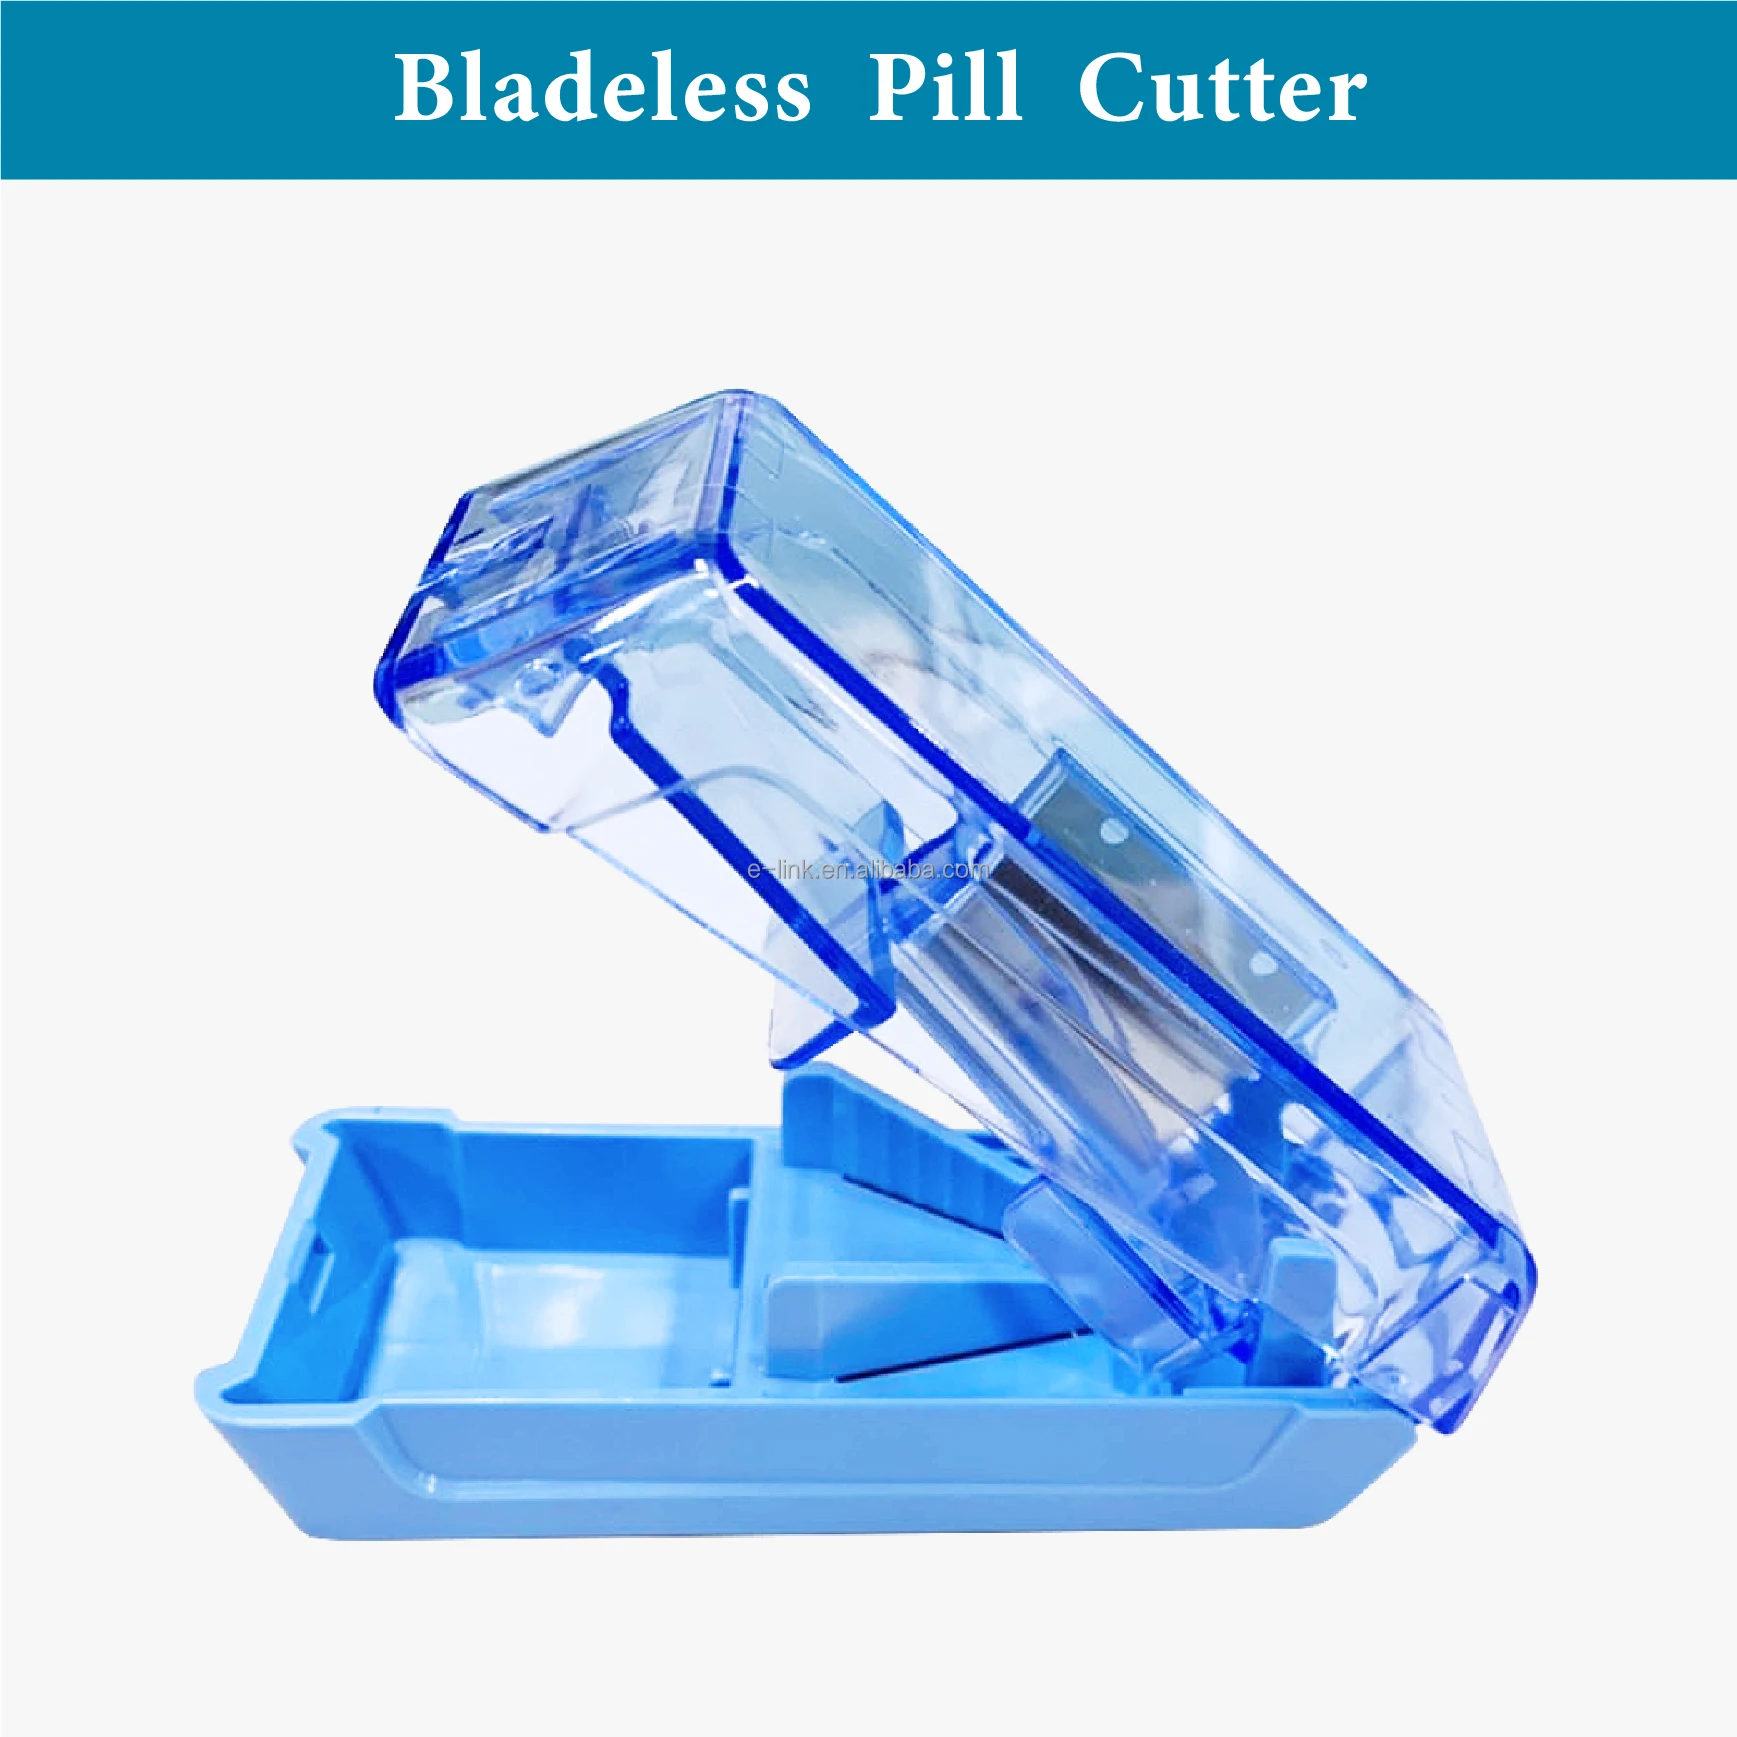 pill cutter